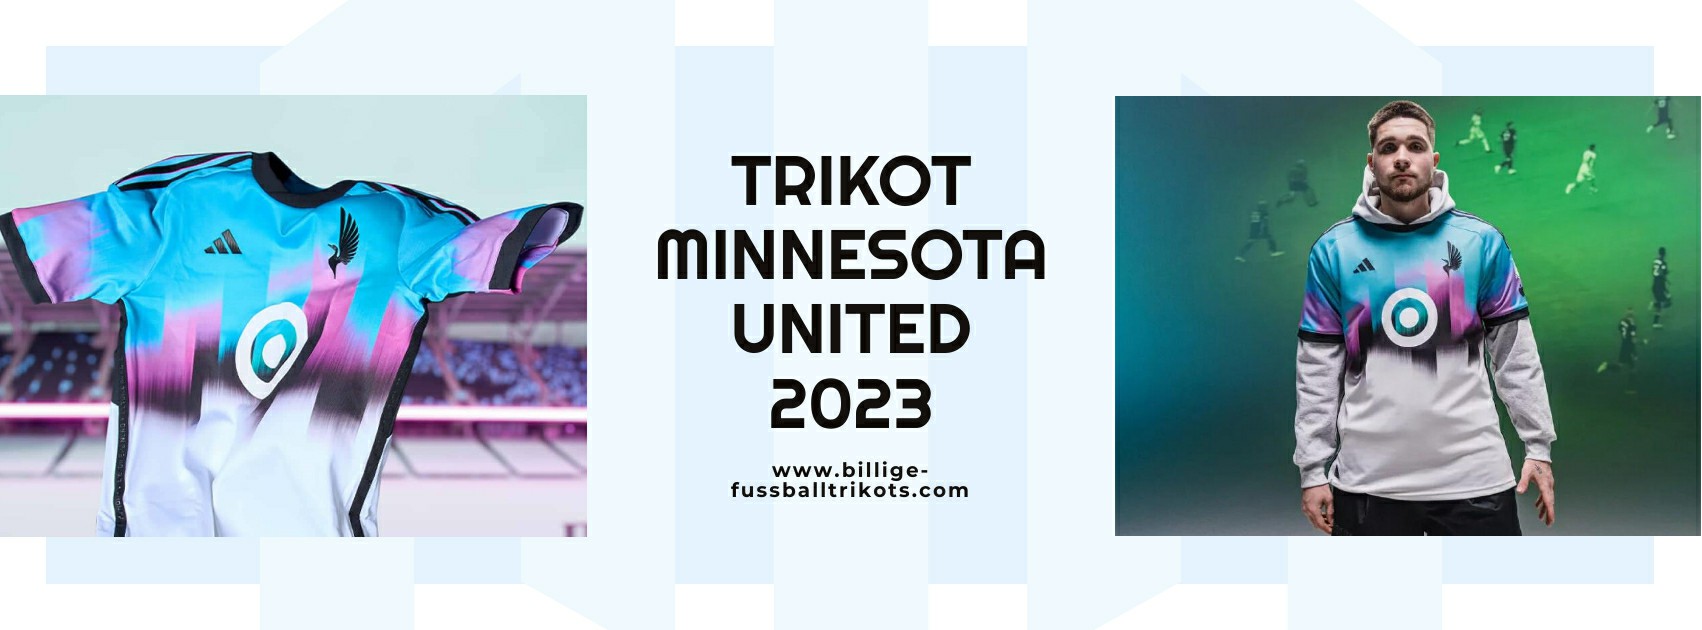 Minnesota United Trikot 2023-2024